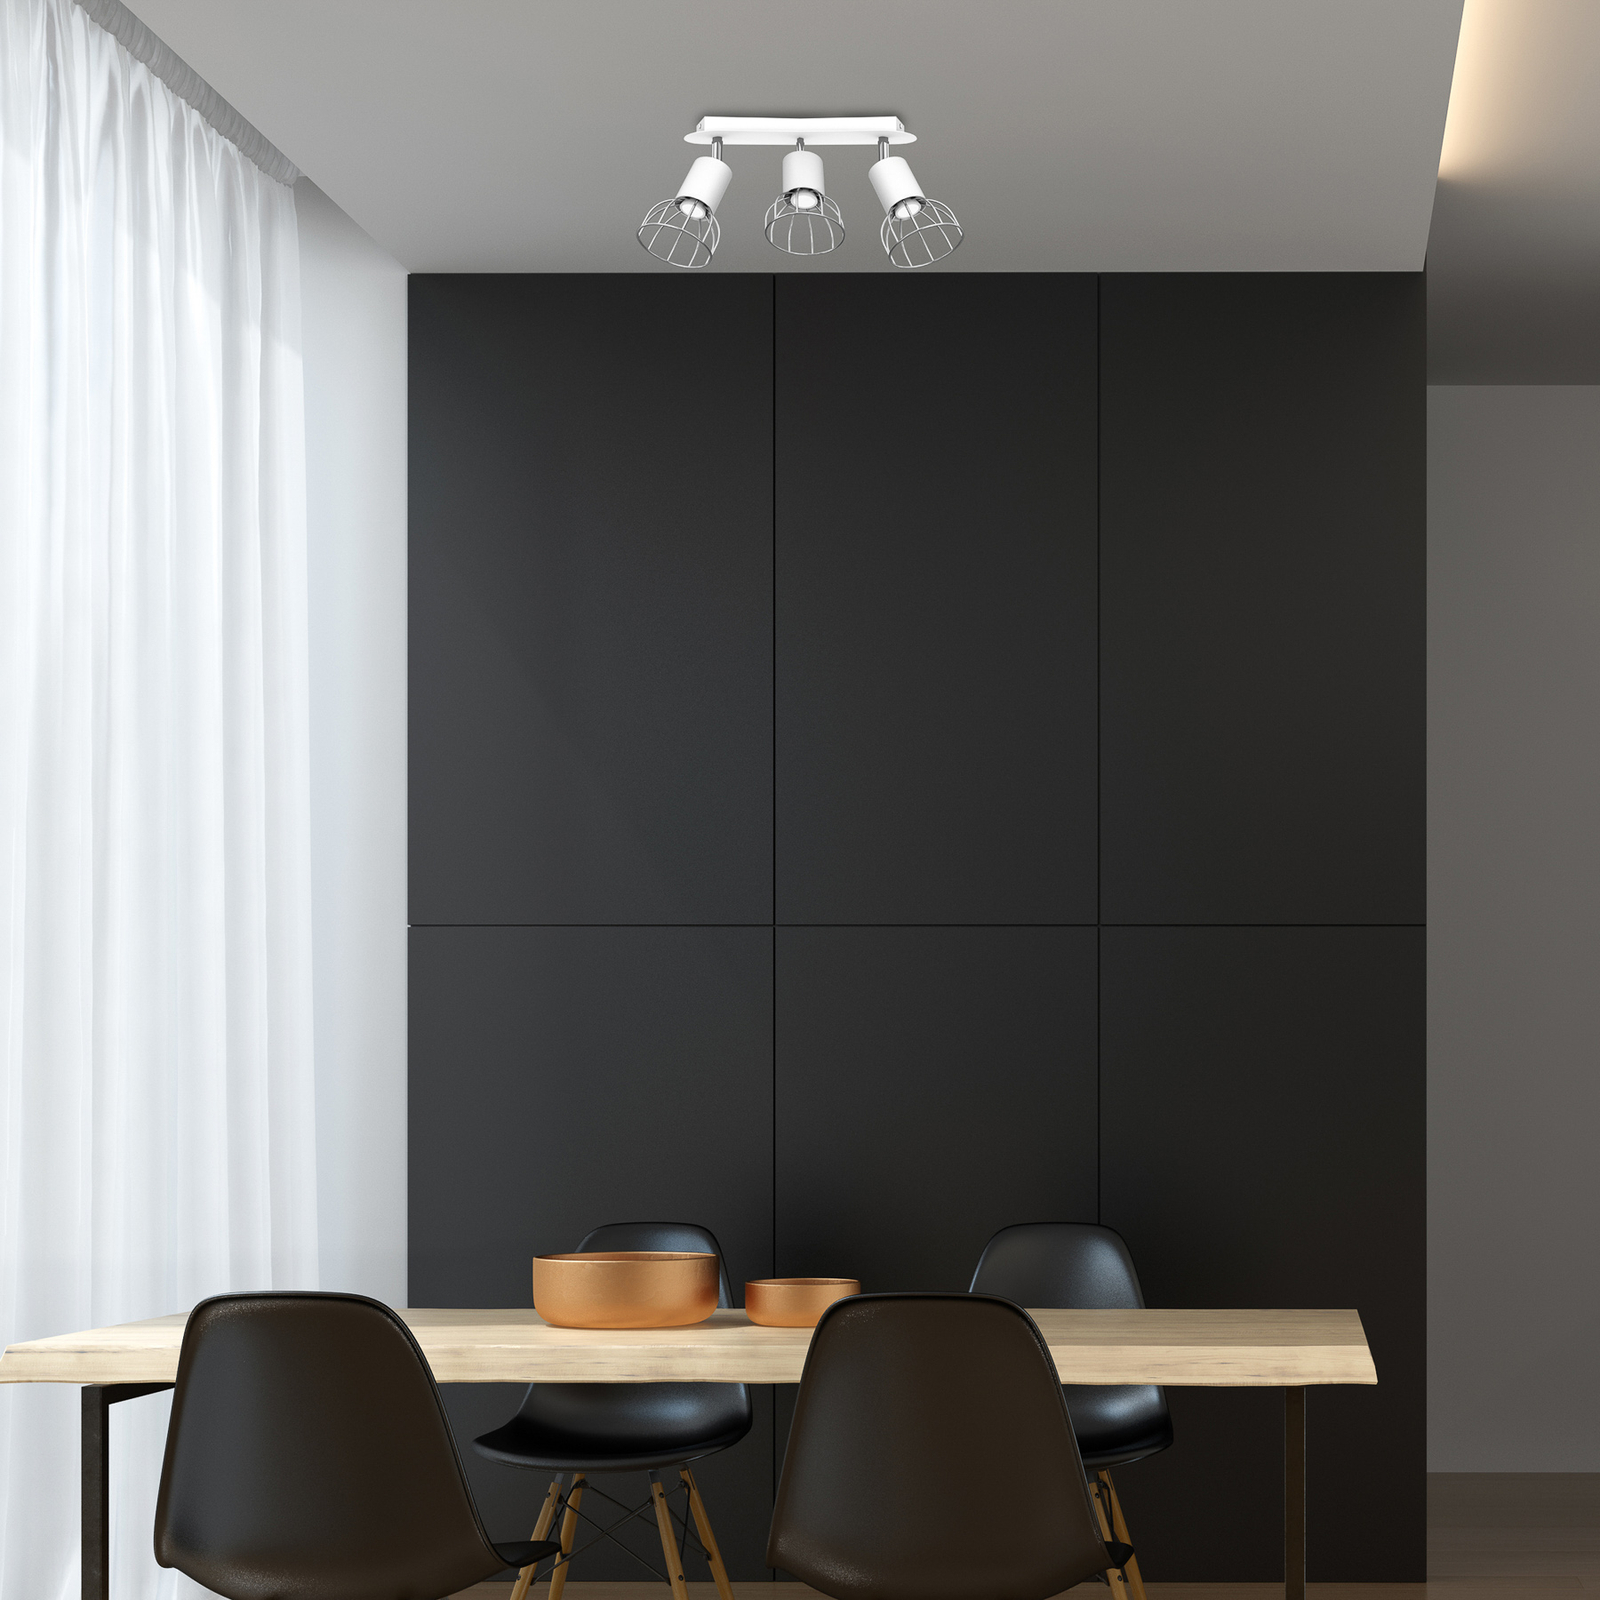 Danjel ceiling spotlight, 3-bulb, white/silver